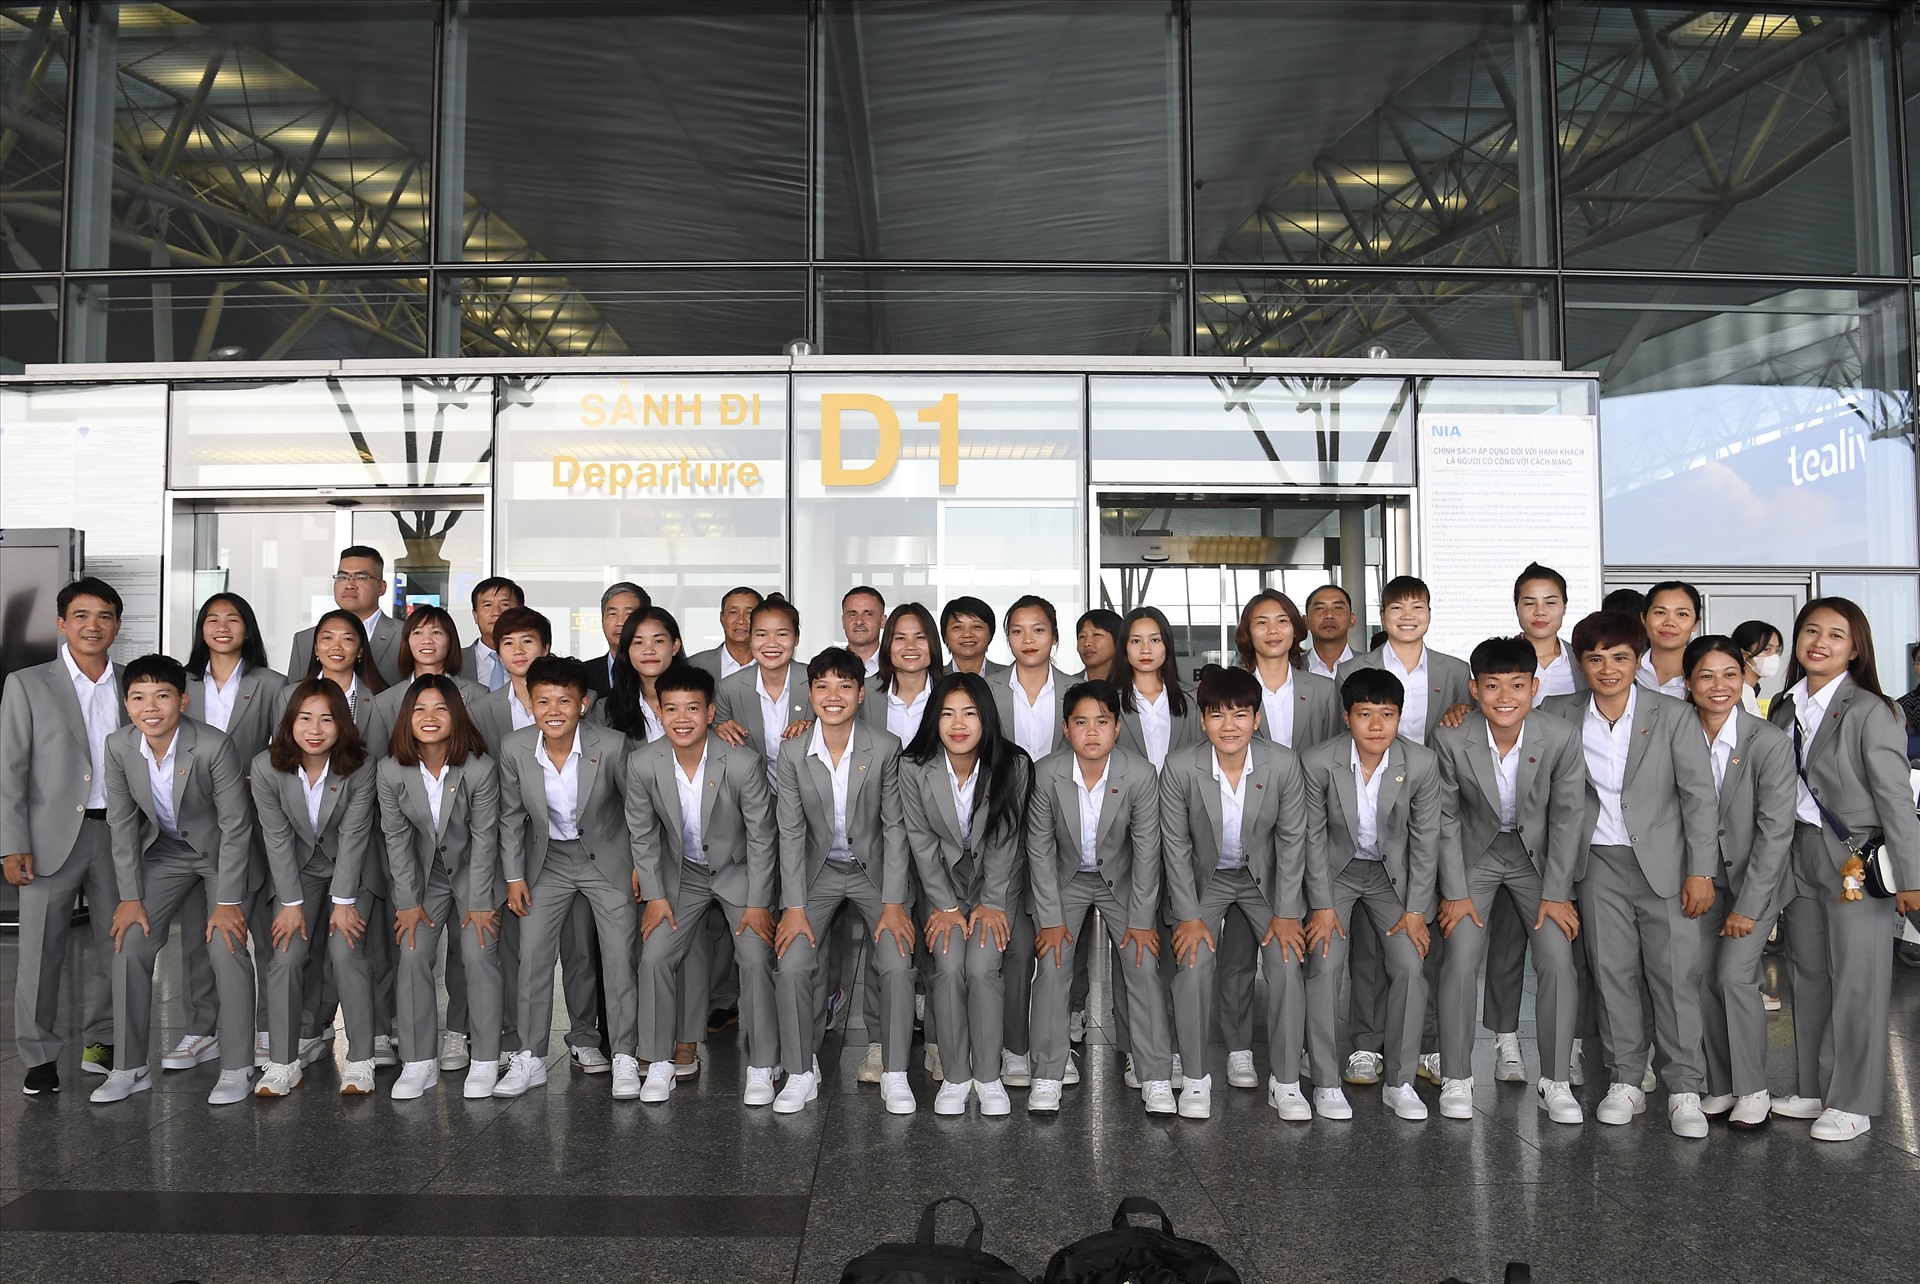 Theo lịch trình, chuyến bay của đội tuyển nữ Việt Nam sẽ cất cánh vào lúc 12h35. Toàn đội sẽ quá cảnh tại Singapore trước khi tiếp tục bay đến New Zealand và dự kiến có mặt tại thành phố Auckland (New Zealand) vào 9h sáng ngày 6.7. 